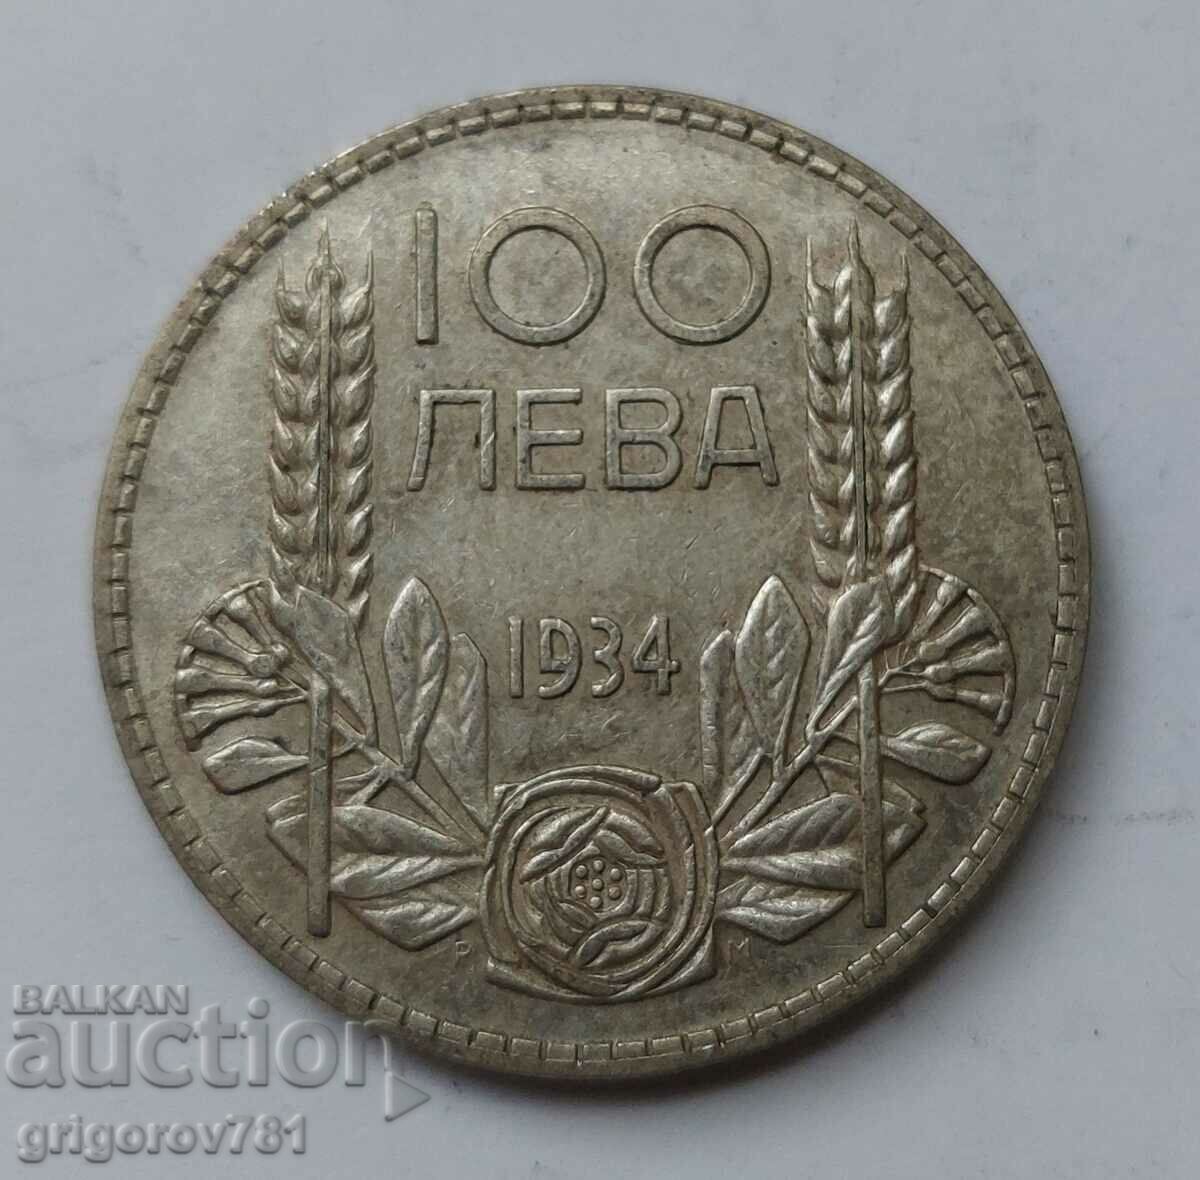 100 leva silver Bulgaria 1934 - silver coin #27